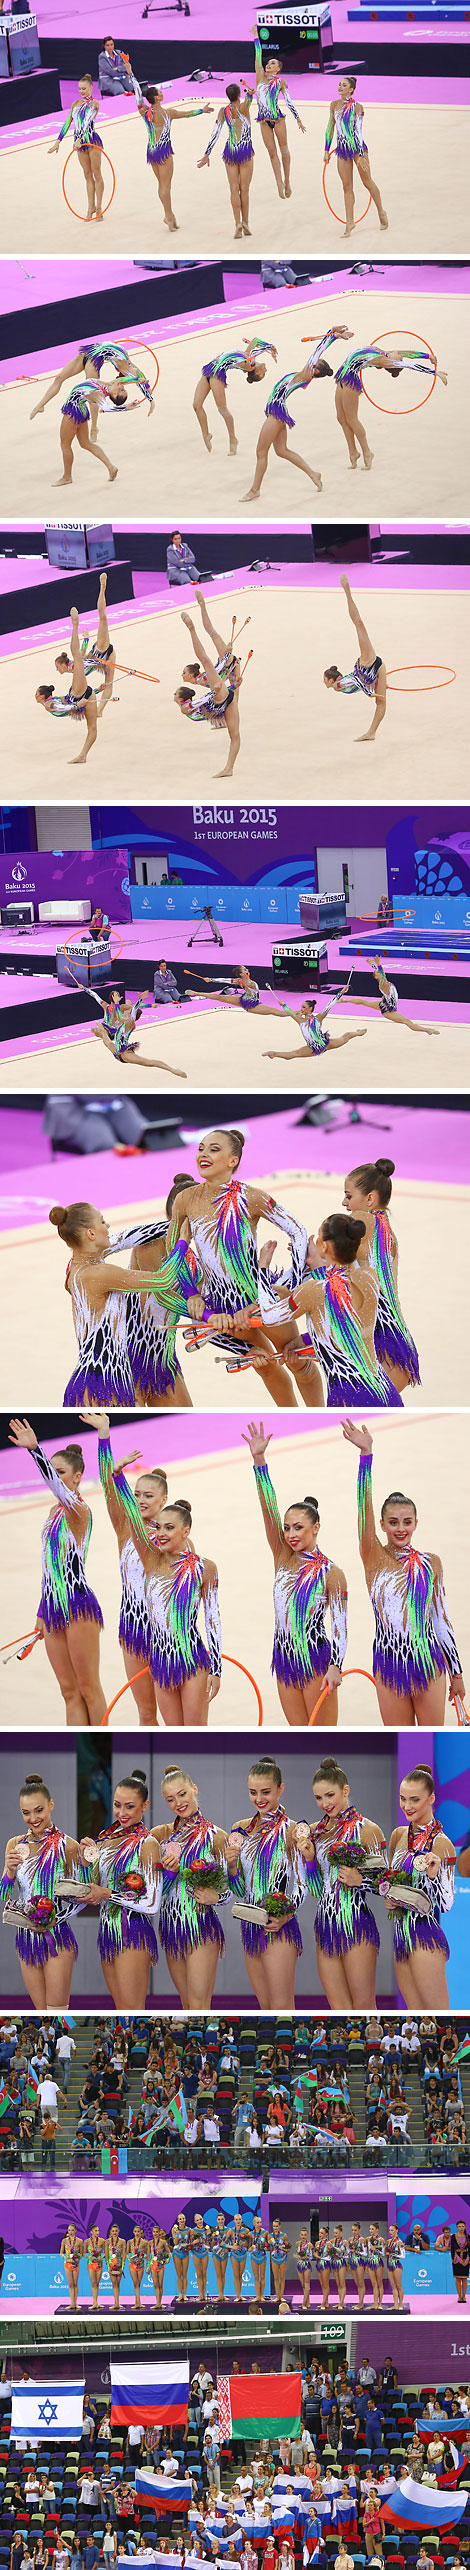 Сборная Беларуси по художественной гимнастике завоевала бронзу в групповых упражнениях на Европейских играх